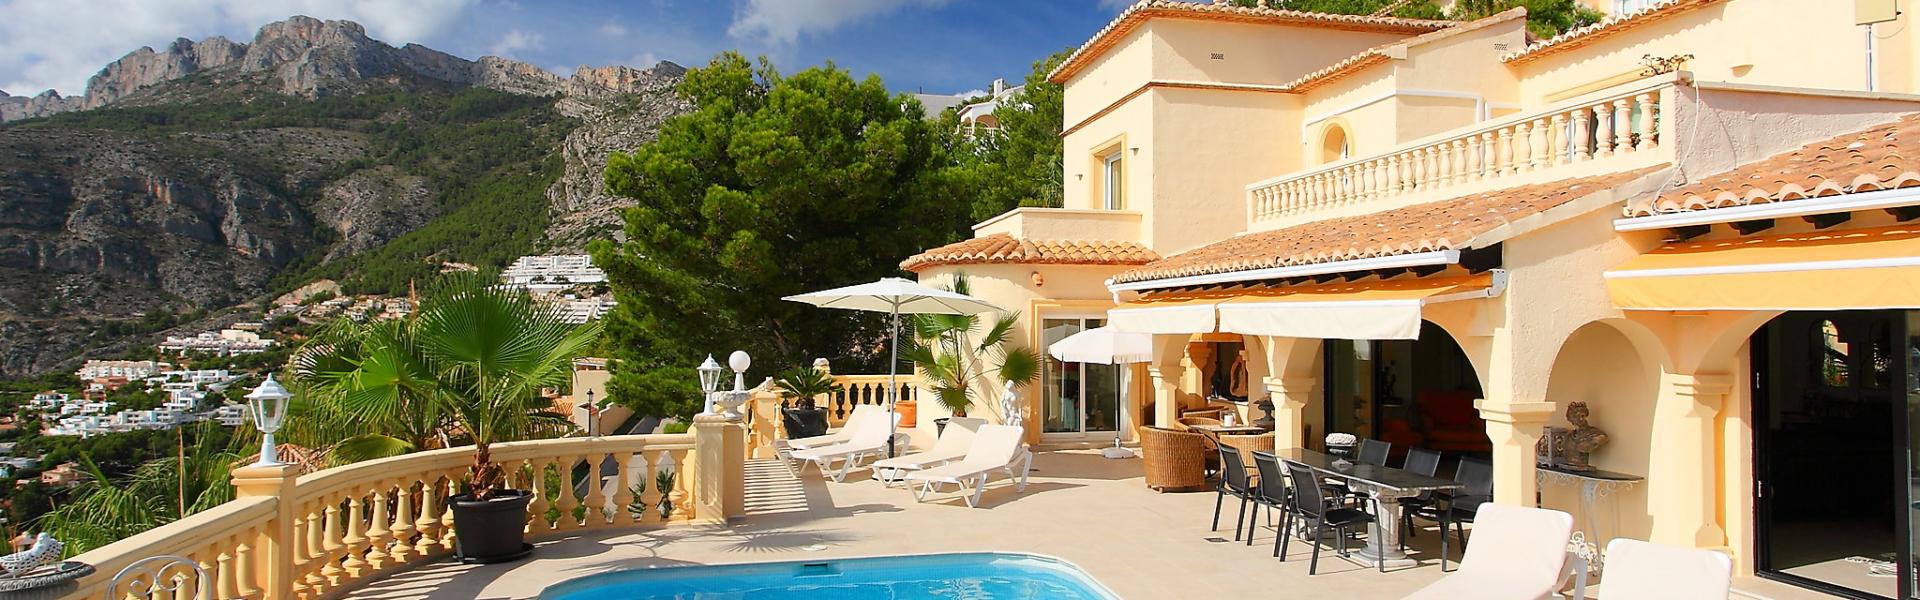 Ferienhaus mit Pool an der Italienischen Riviera - HomeToGo